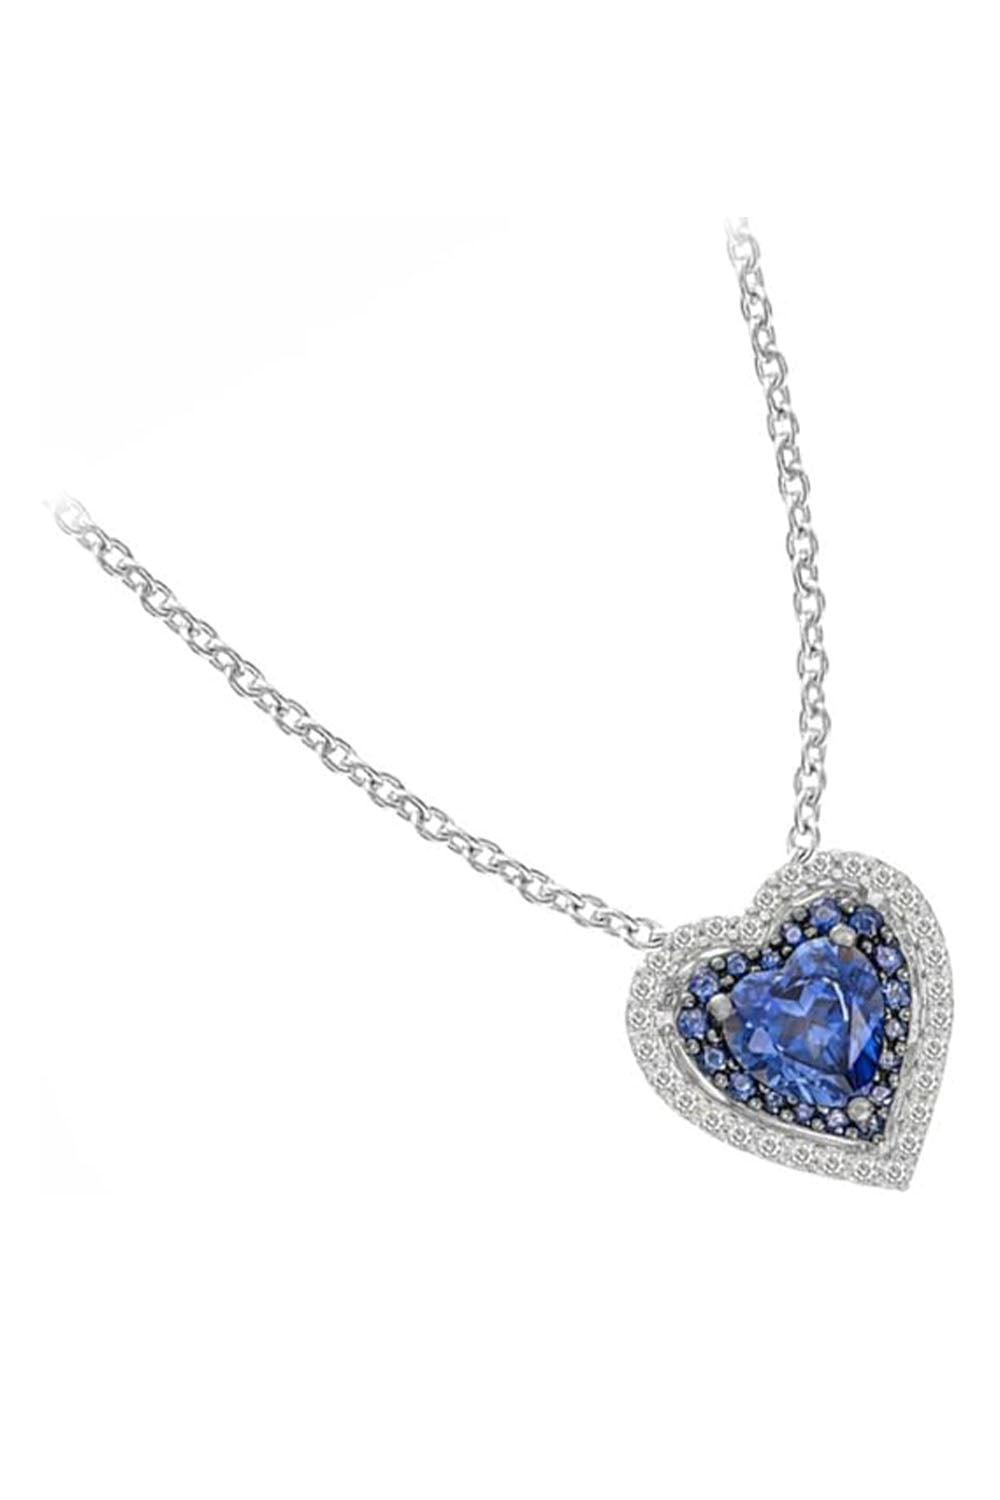 White Gold Color Latest Blue Sapphire Double Heart Pendant Necklace 